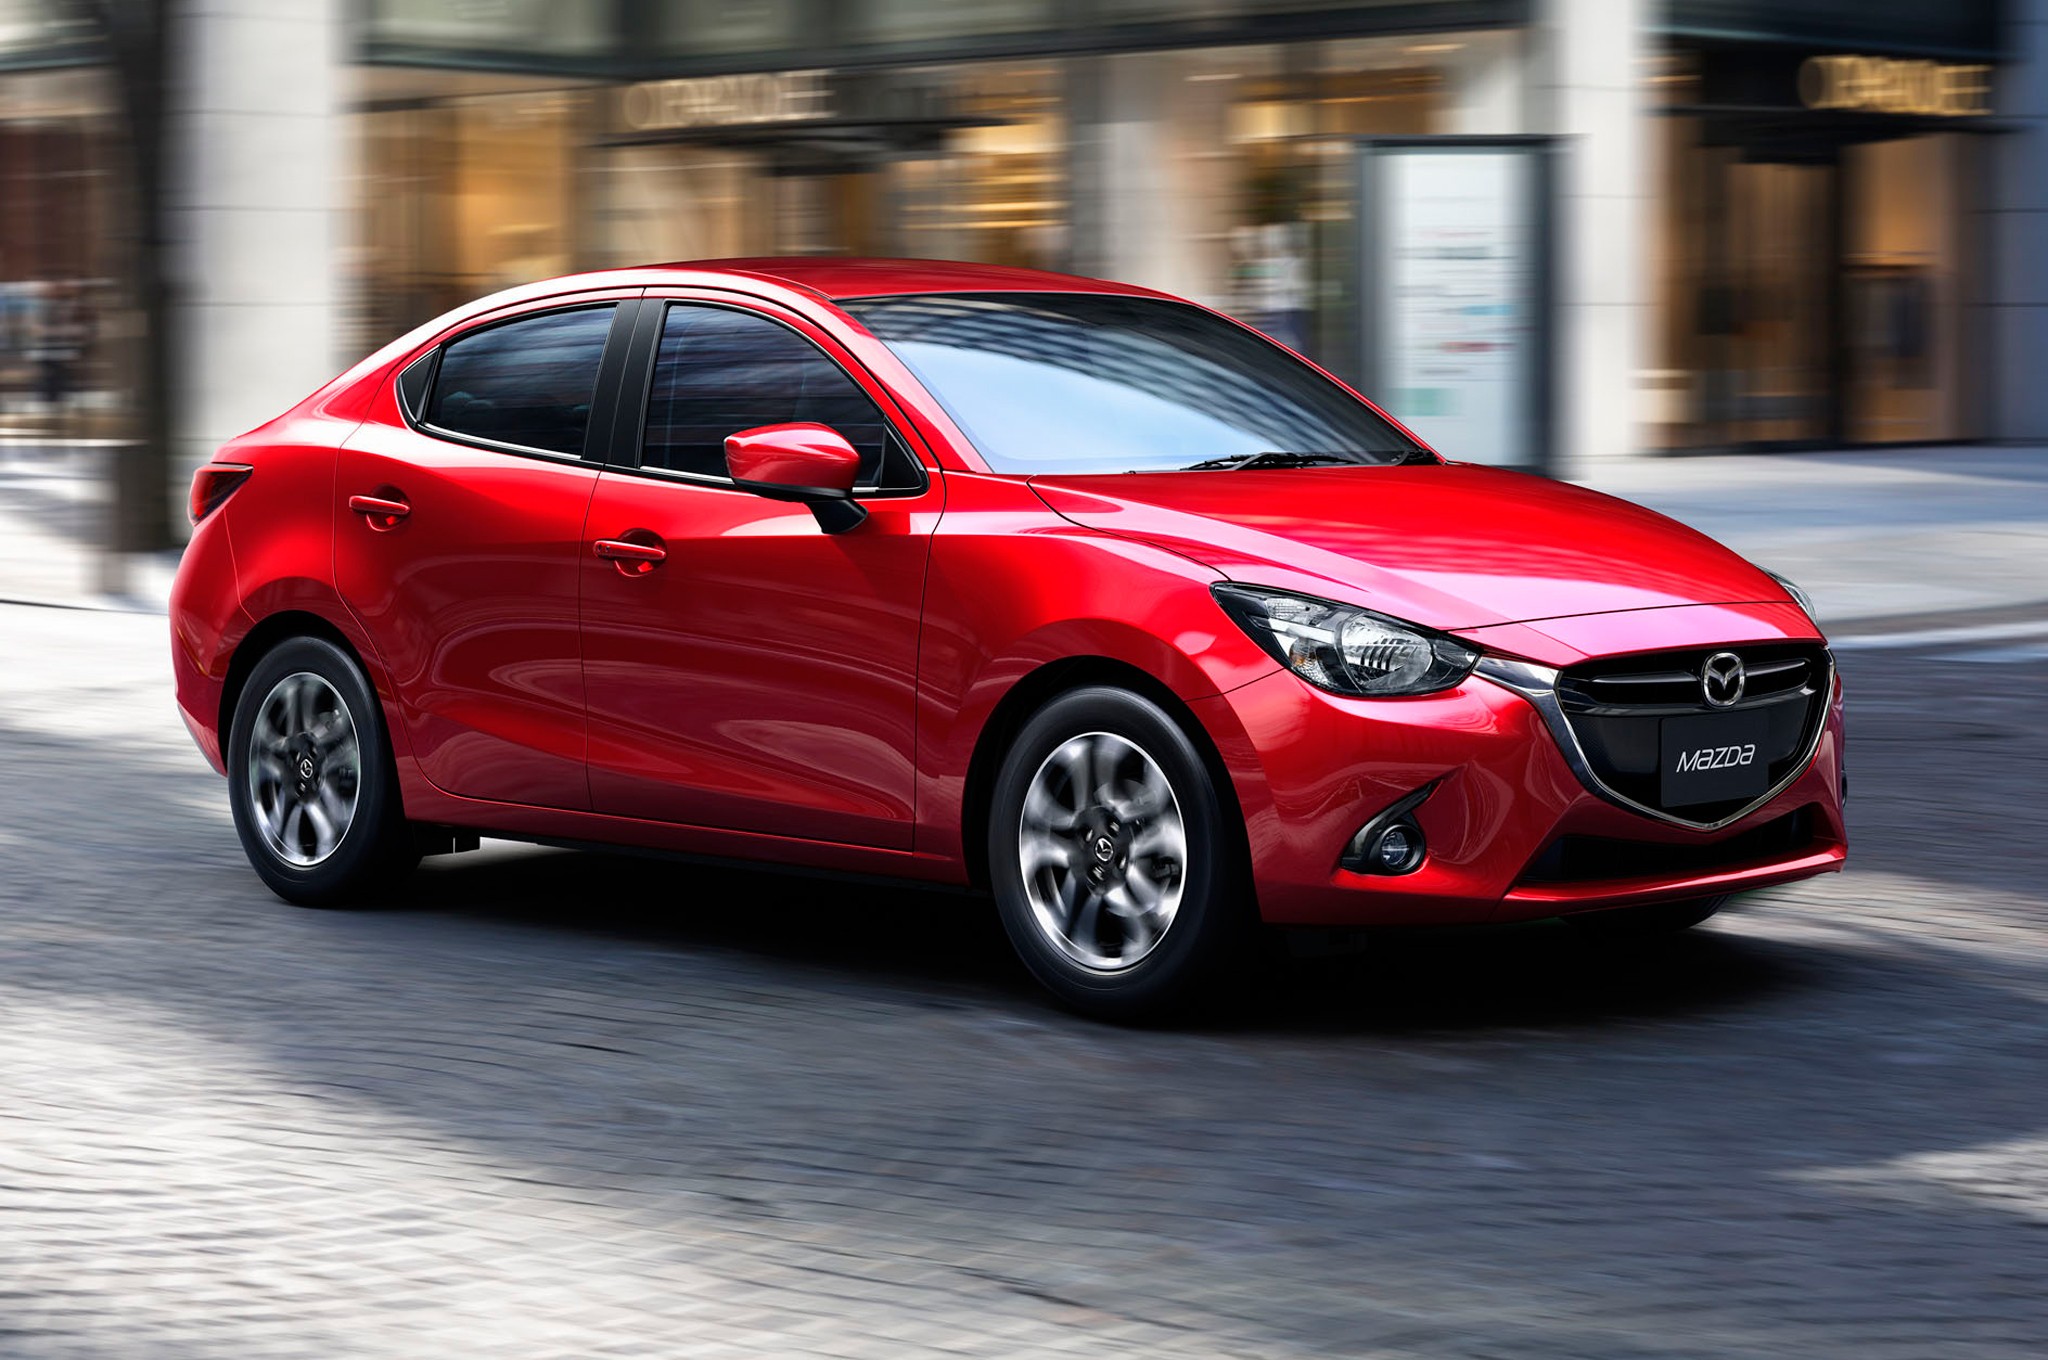 Mazda 2 2016 sở hữu thiết kế và động cơ mới cùng với khả năng chuyên chở nhiều hơn. Tại thị trường Việt Nam, Mazda 2 đang được giảm đến 41 triệu đồng.